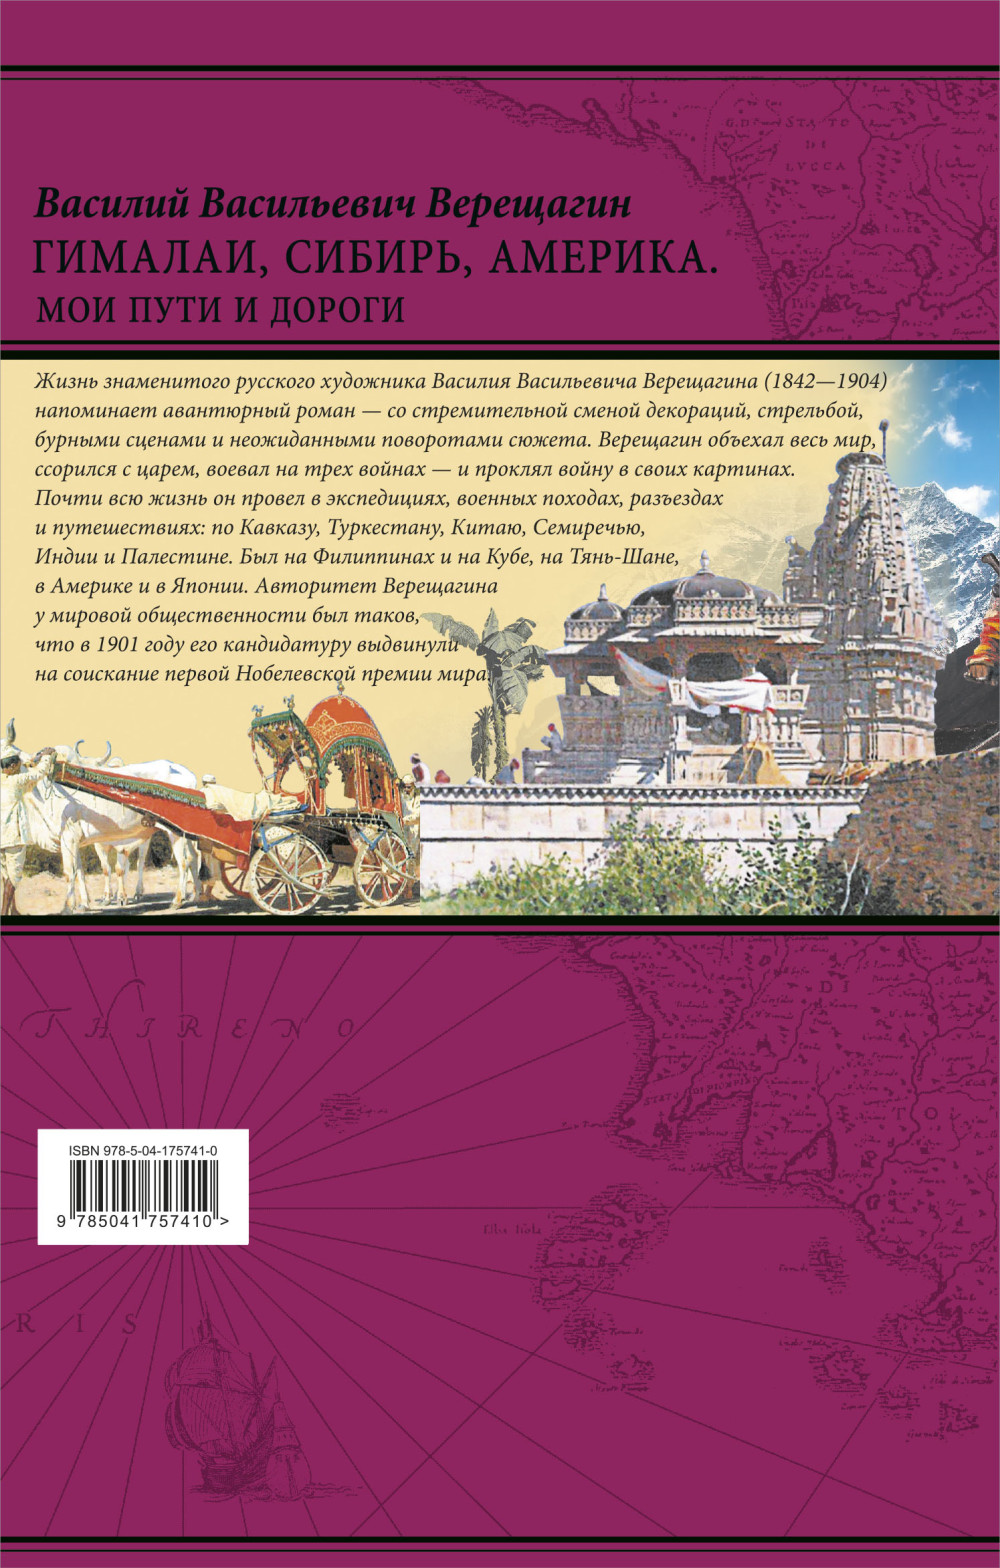 Гималаи, Сибирь, Америка: Мои пути и дороги: Очерки, наброски, воспоминания (обновленное издание)